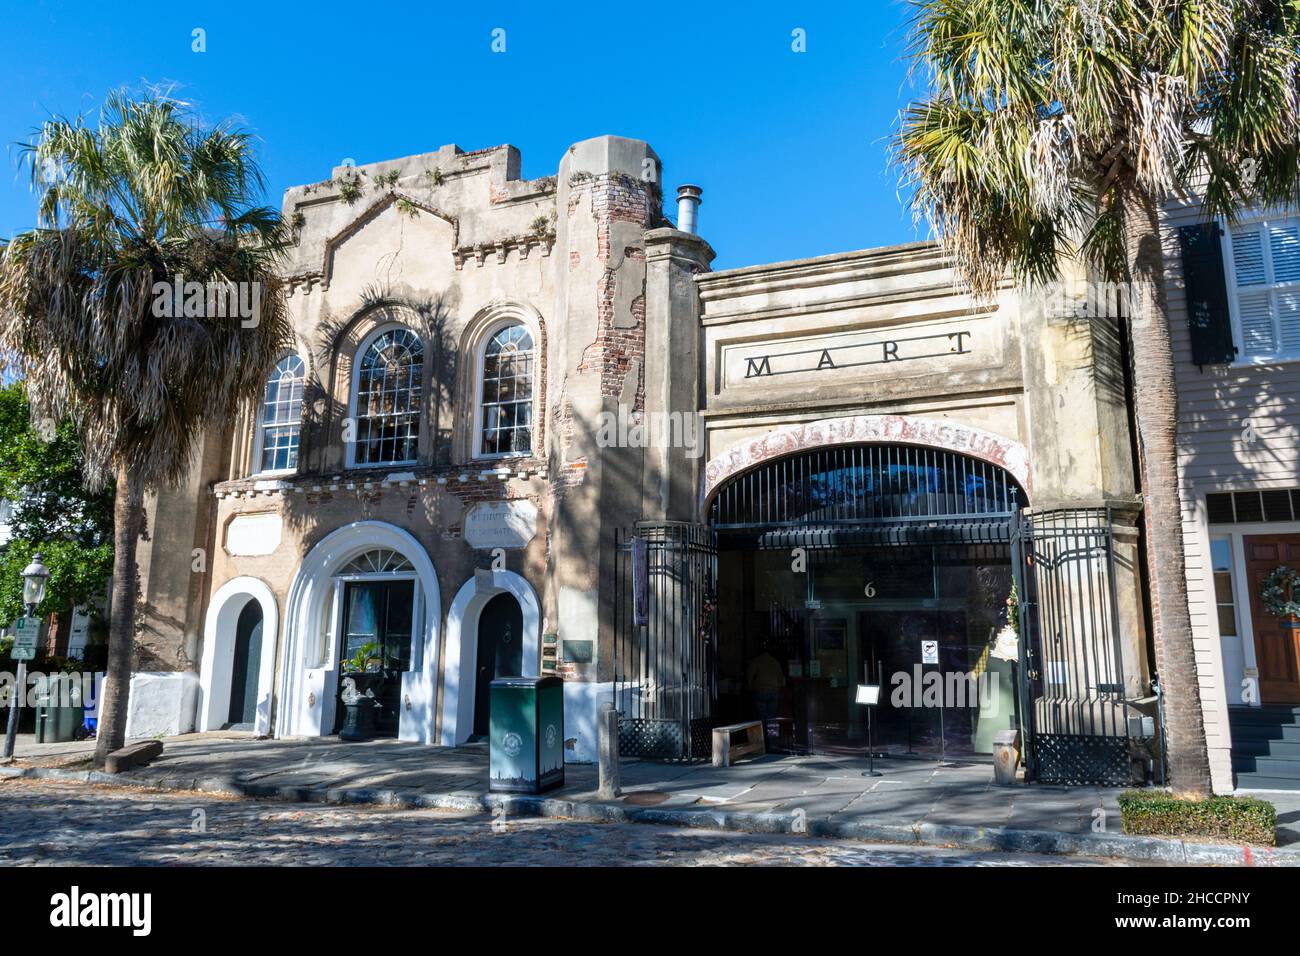 Charleston, South Carolina, USA - 27 novembre 202: Il museo Old Slave Mart è un'attrazione educativa nel quartiere storico. Foto Stock